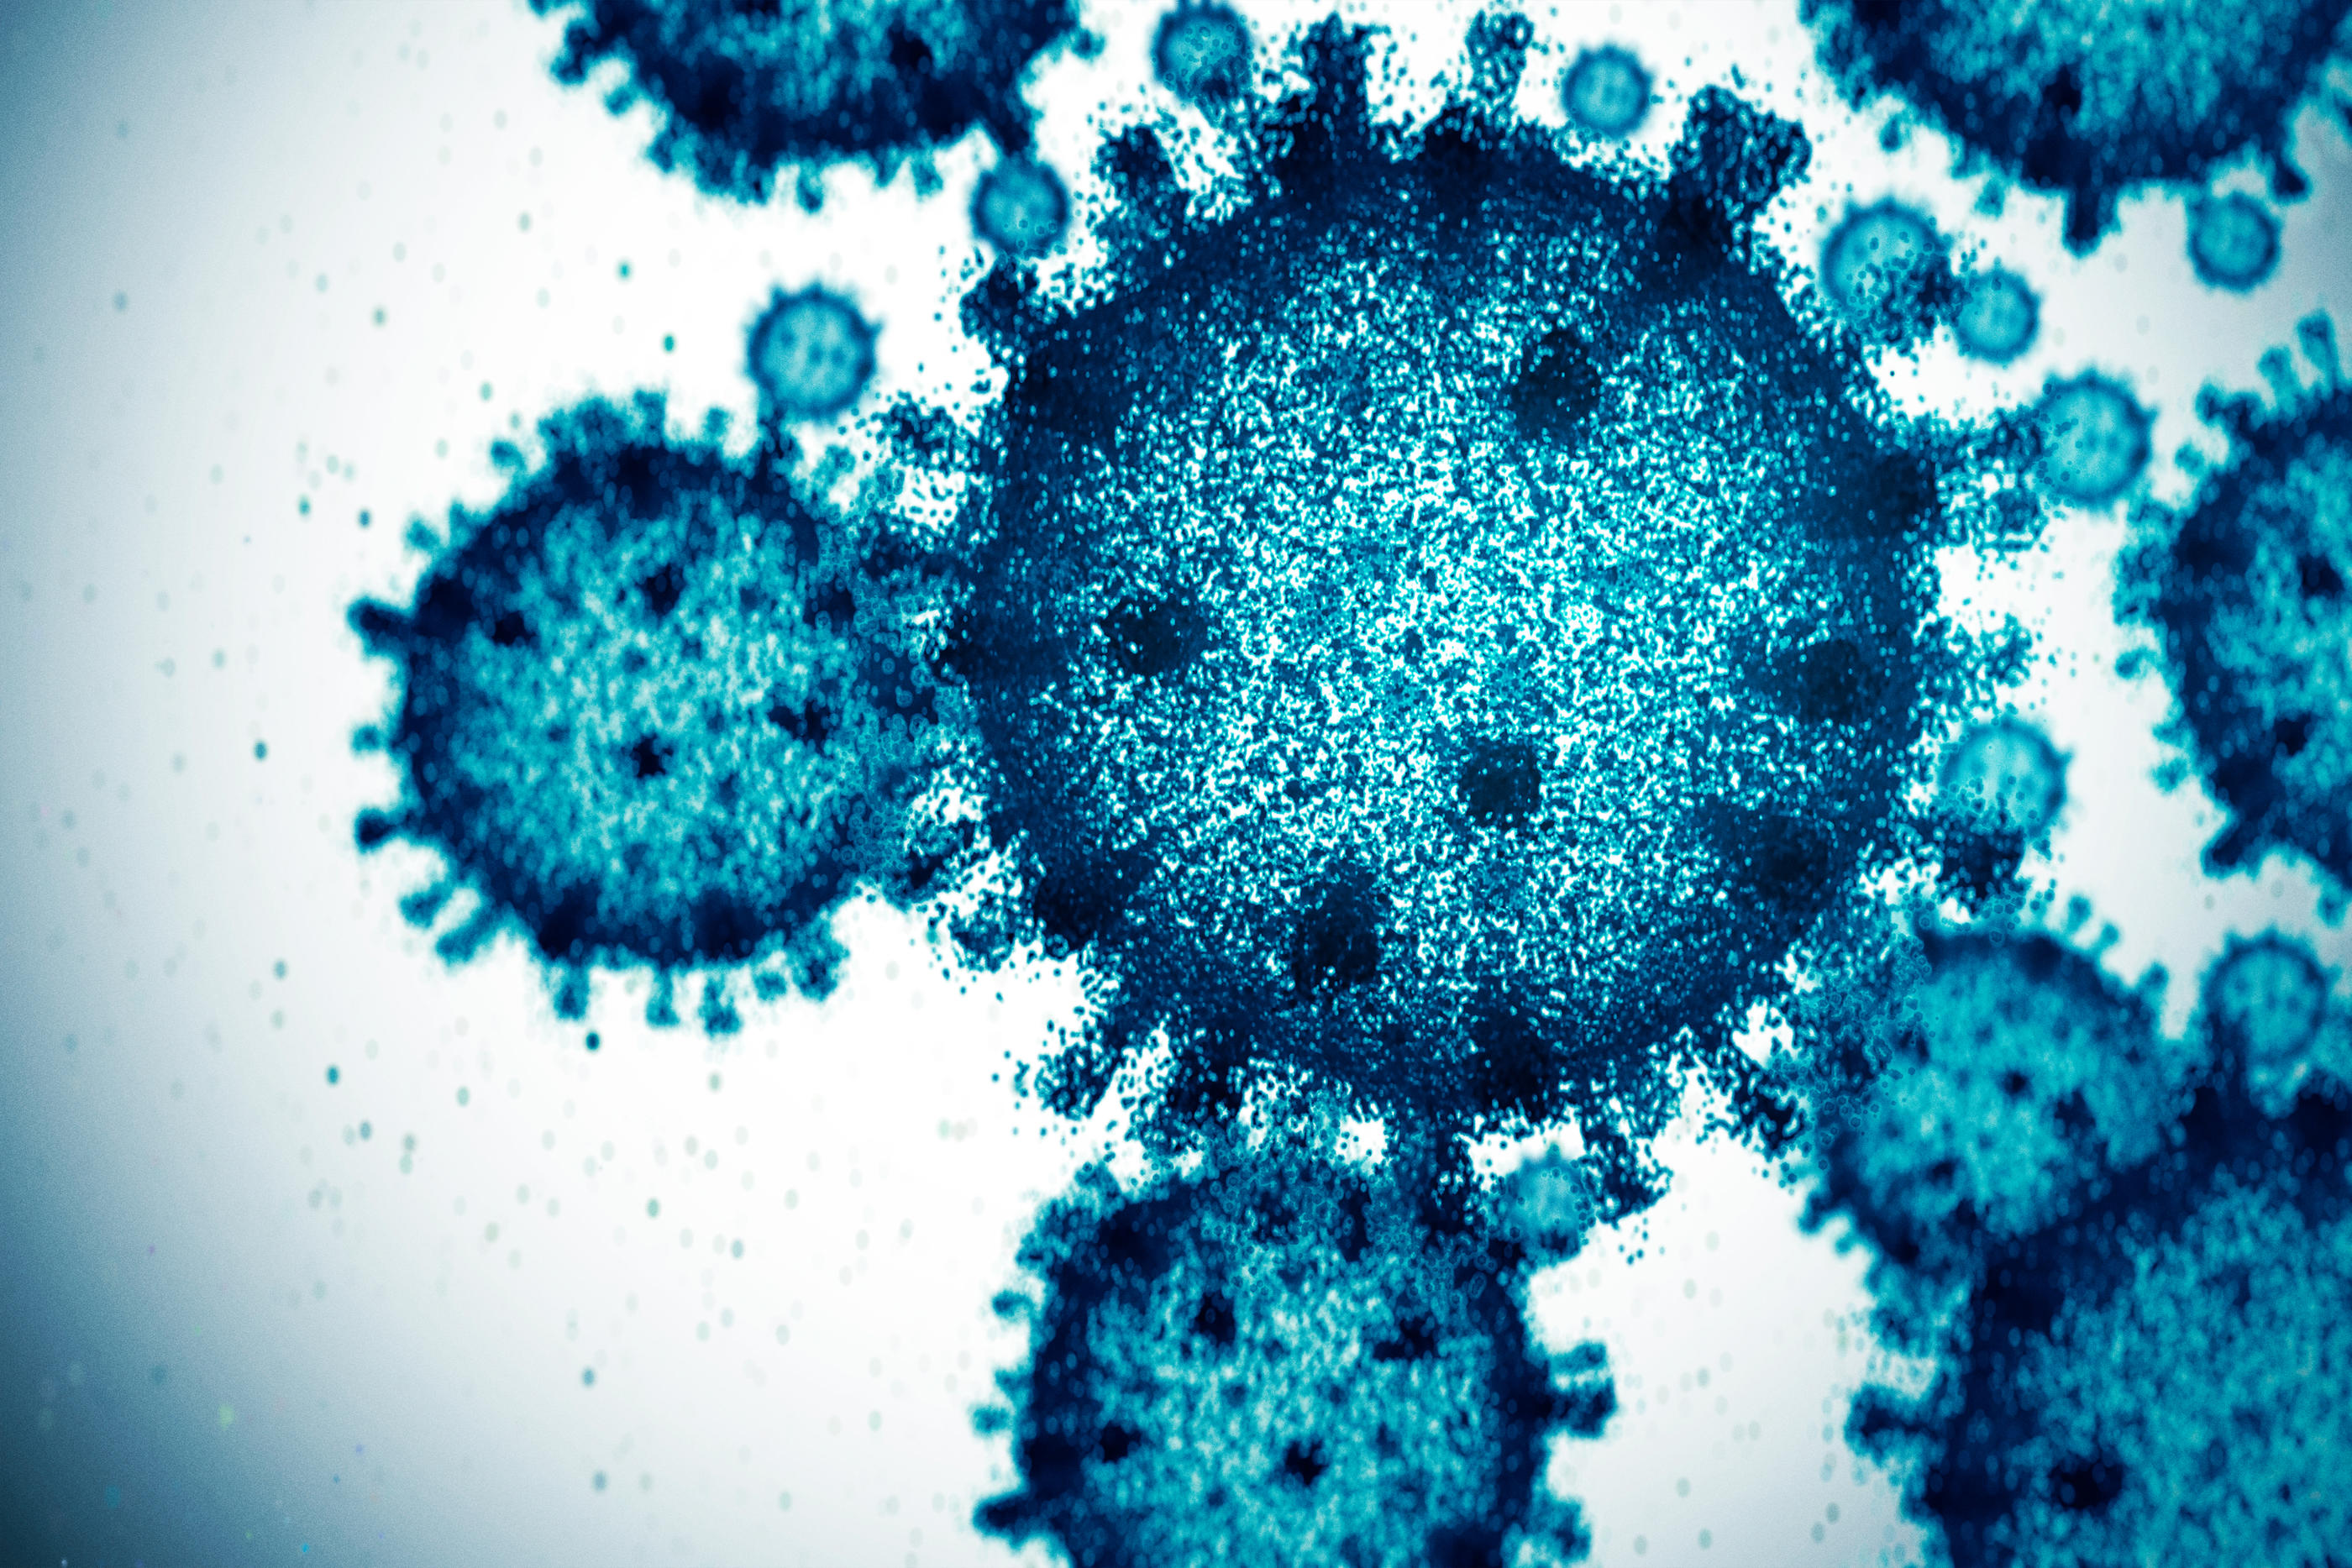 L'OMS a dressé la liste d’une dizaine de pathogènes «susceptibles de provoquer de futures flambées et pandémies», comportant notamment une «maladie X» encore inconnue. (Illustration) Yuichiro Chino